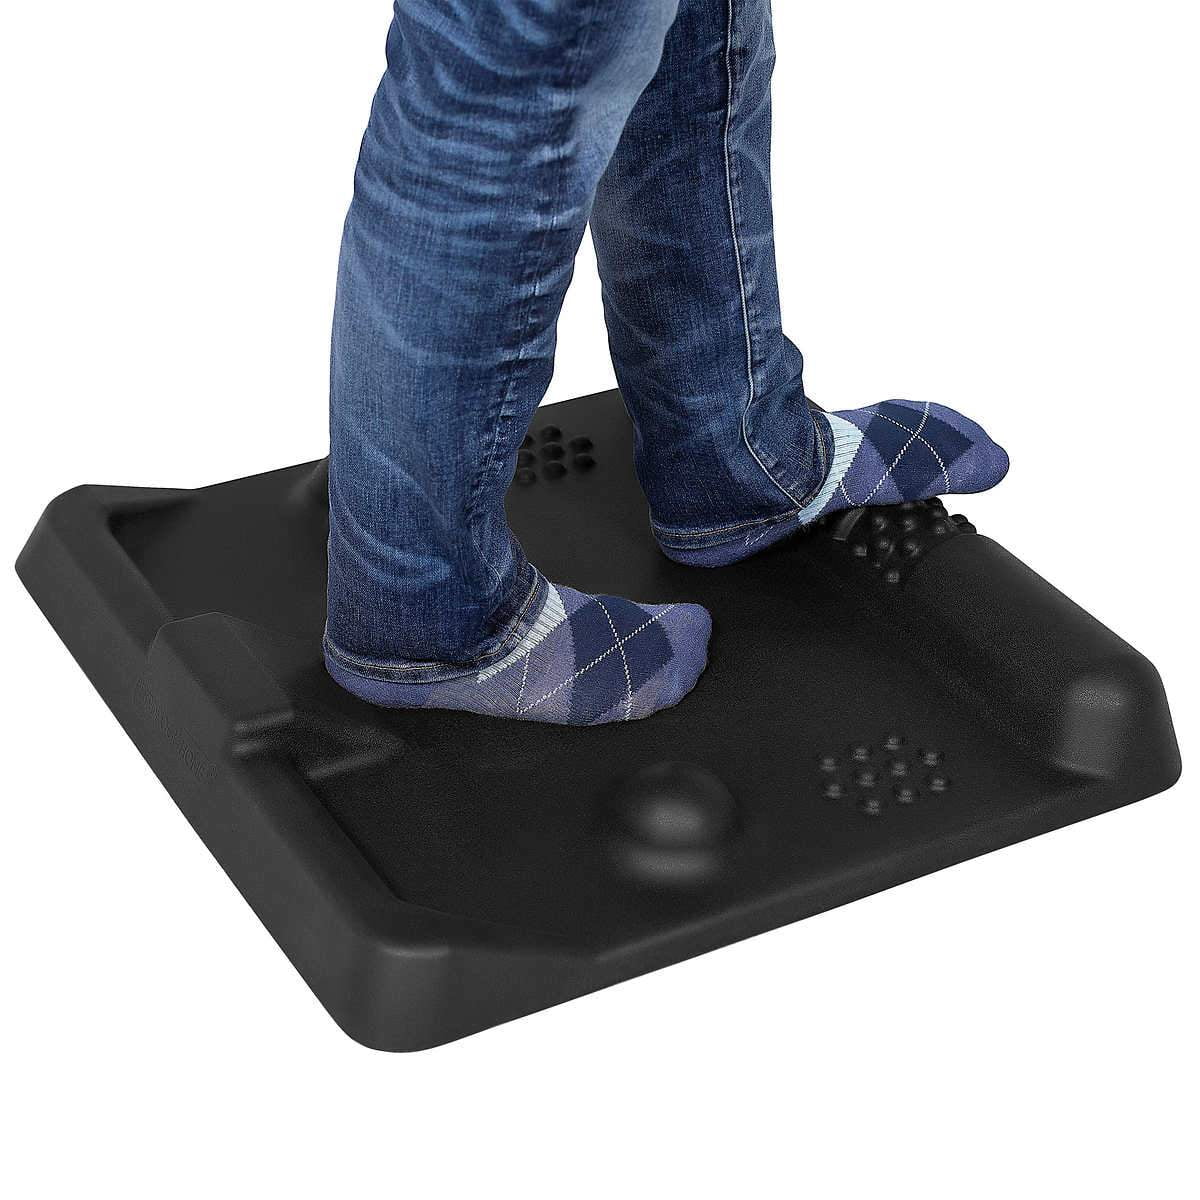 Ergonomic Standing Desk Mats : standing desk mat